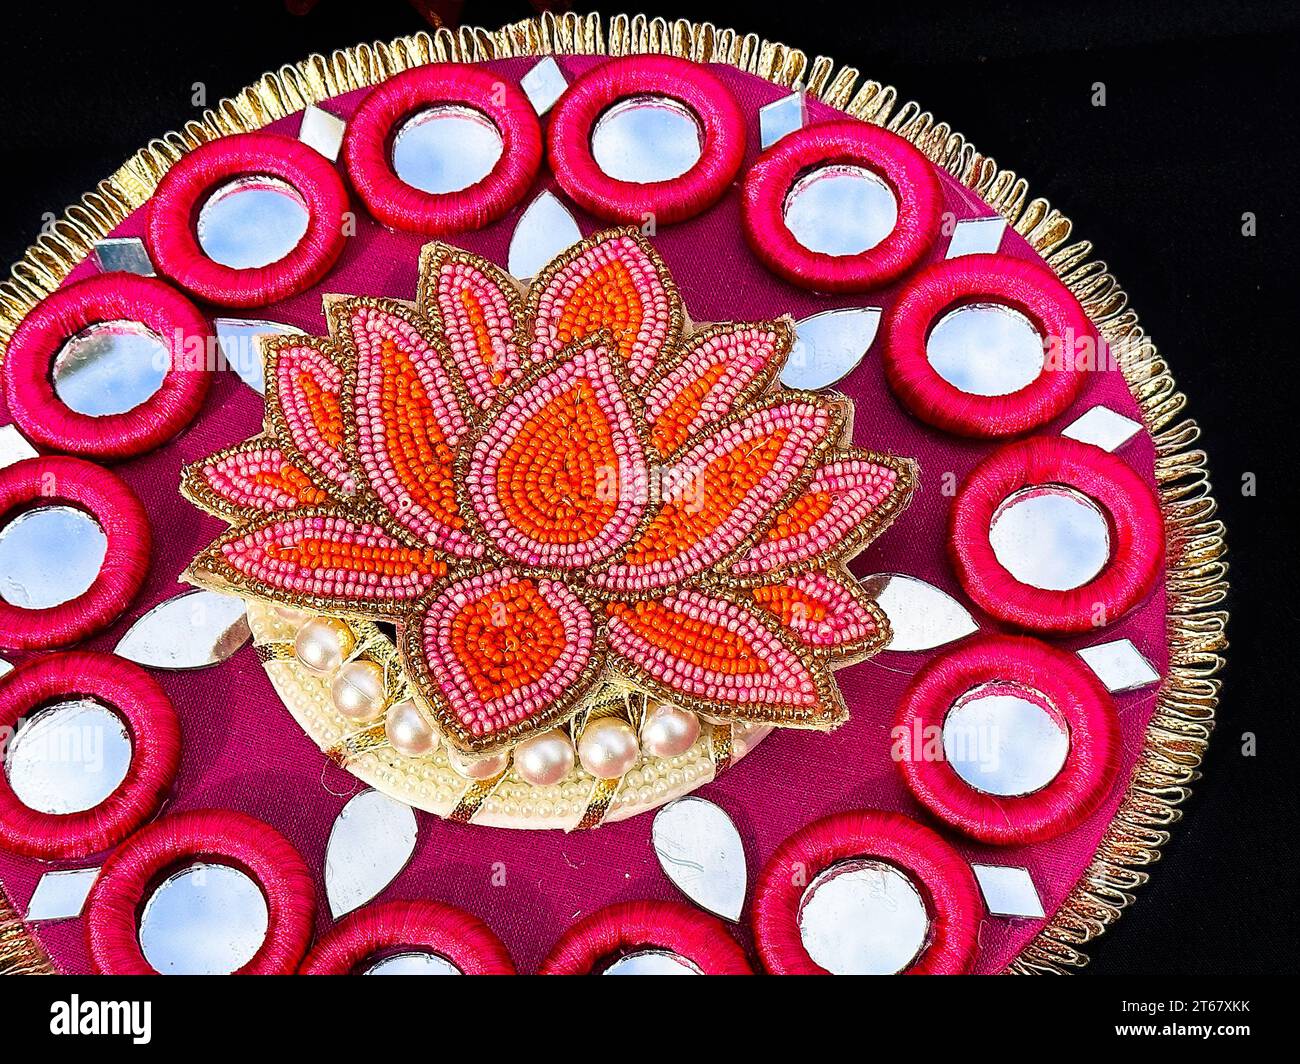 Indische Souvenirgegenstände wurden während des Diwali Festivals als Waren verkauft. Die traditionelle jährliche Veranstaltung wird am Nathan Phillips Square gefeiert Stockfoto